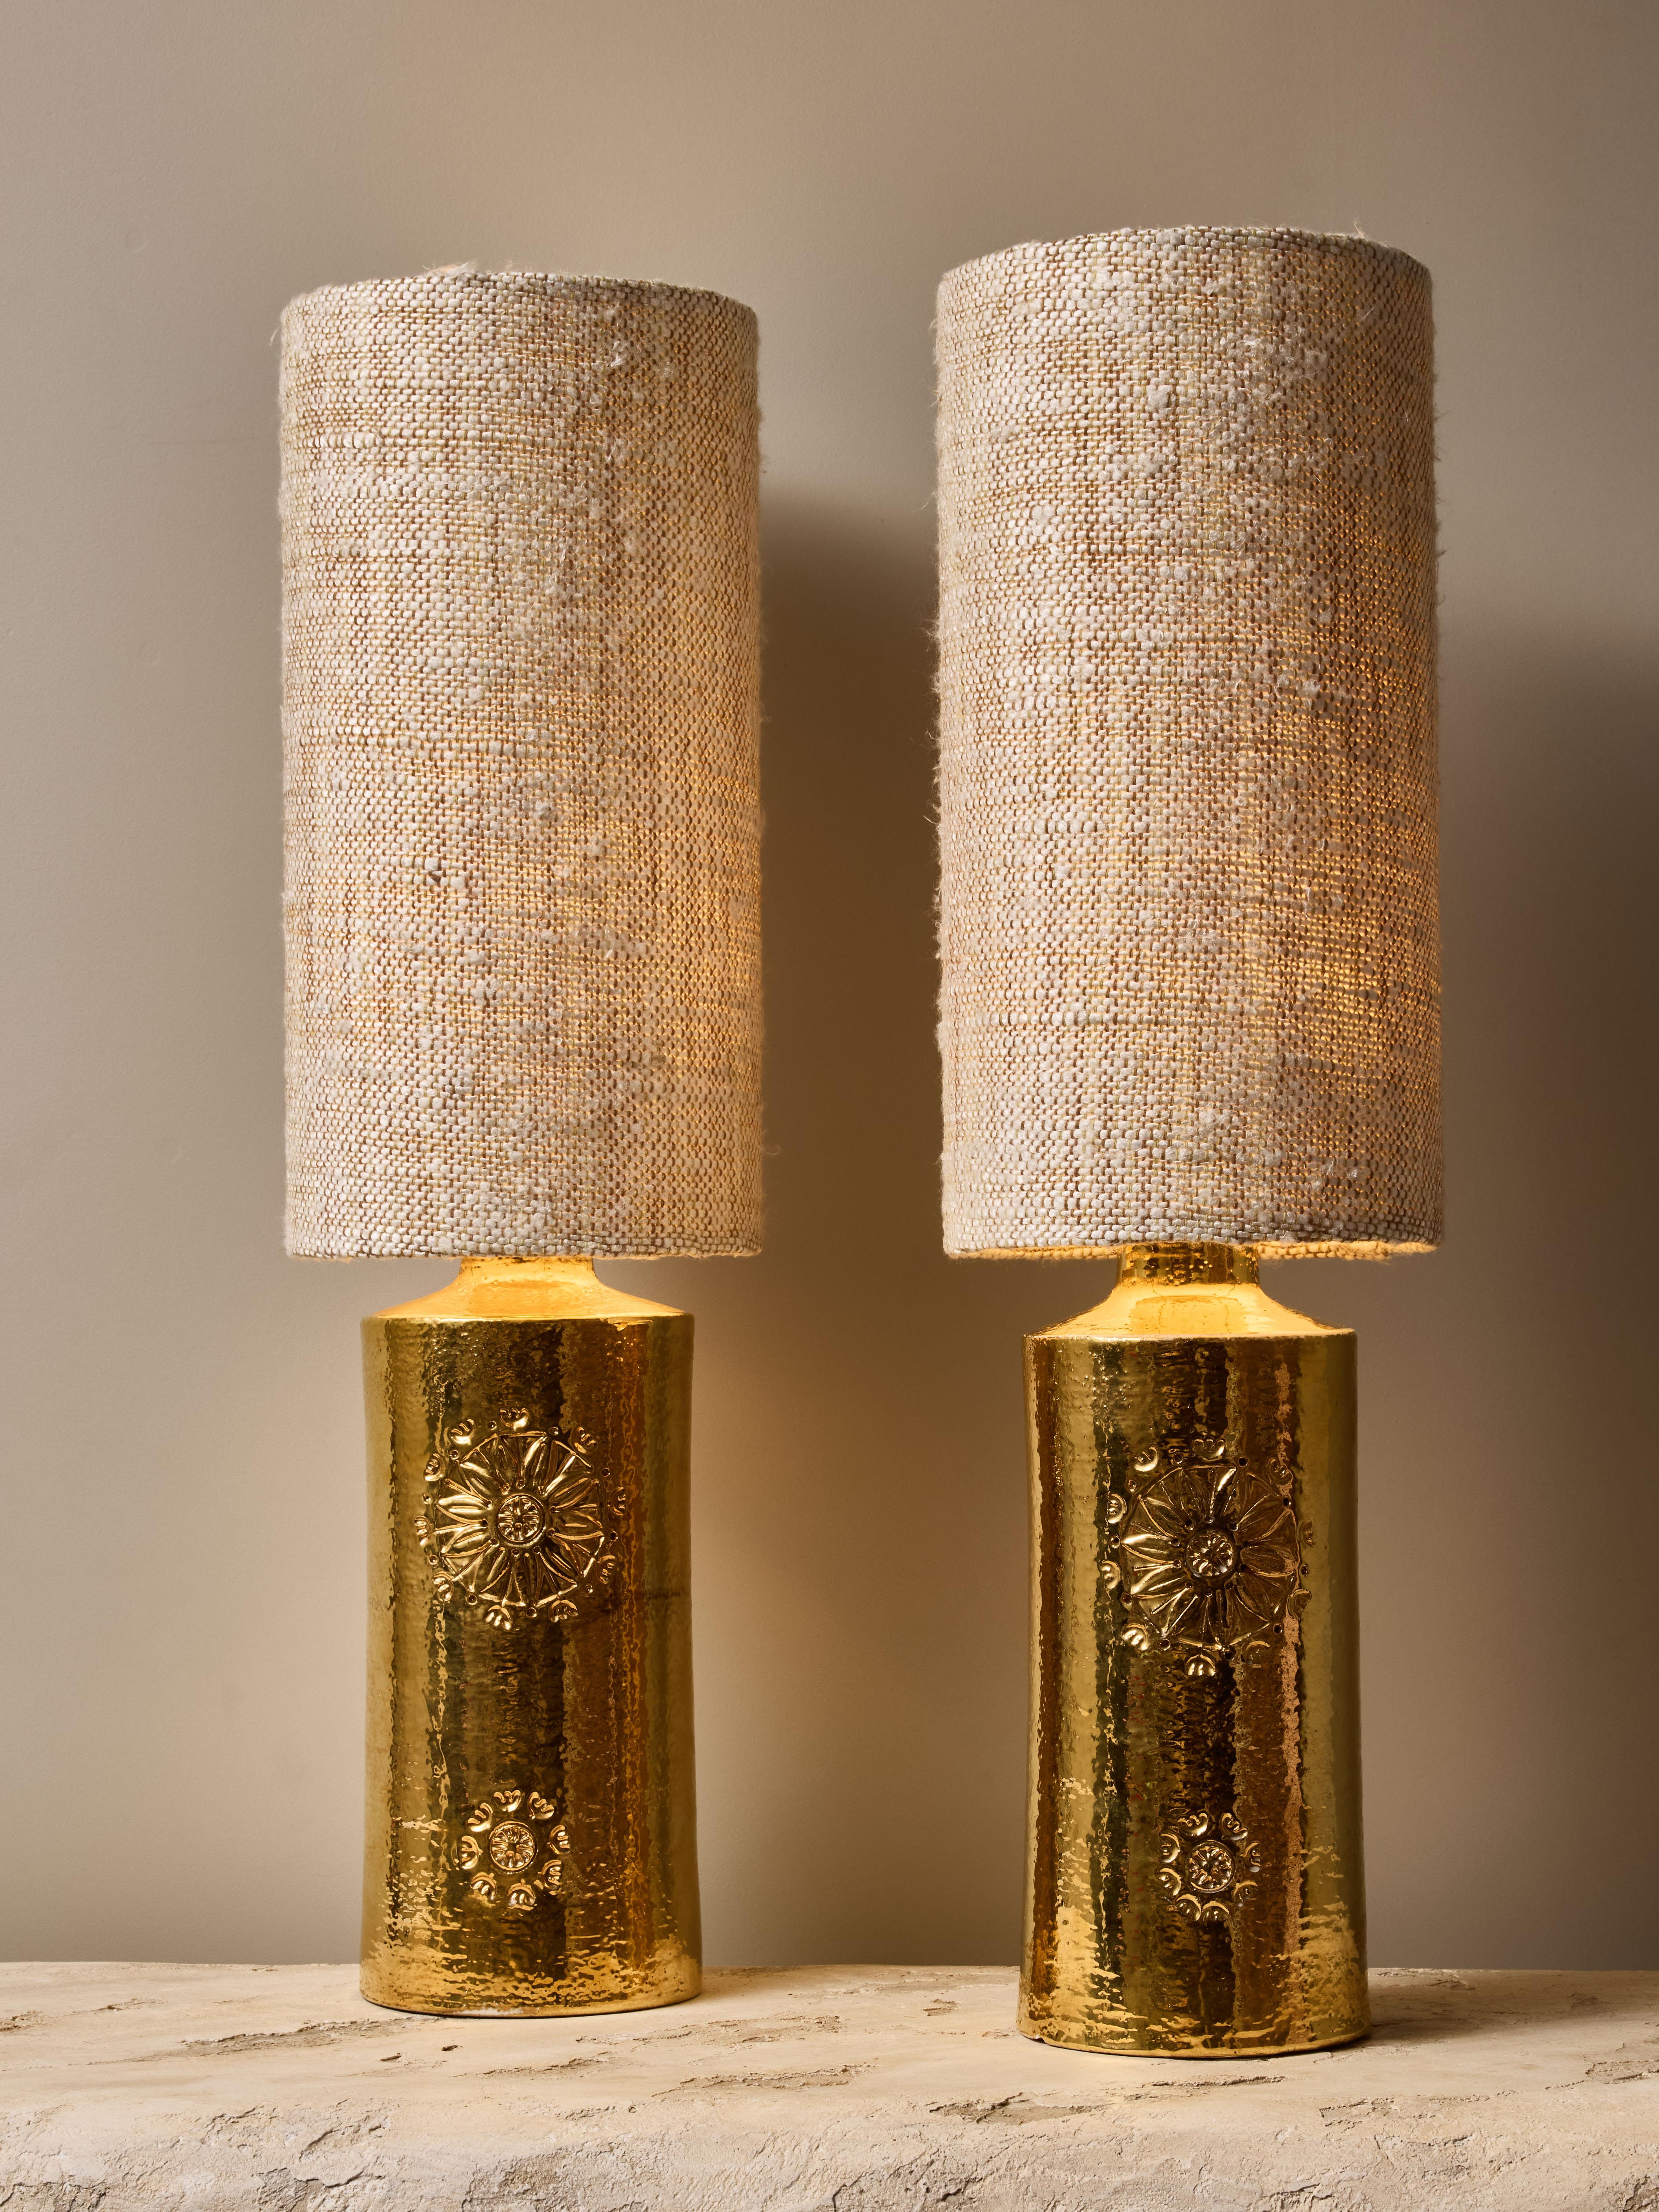 Paire de lampes de table cylindriques en céramique, avec une glaçure dorée brillante et des décors floraux sculptés.

Autocollant original de la  sous les lampes.

Dimensions avec abat-jour : ø20 H73cm.



BERGBOMS
Bergboms est une entreprise